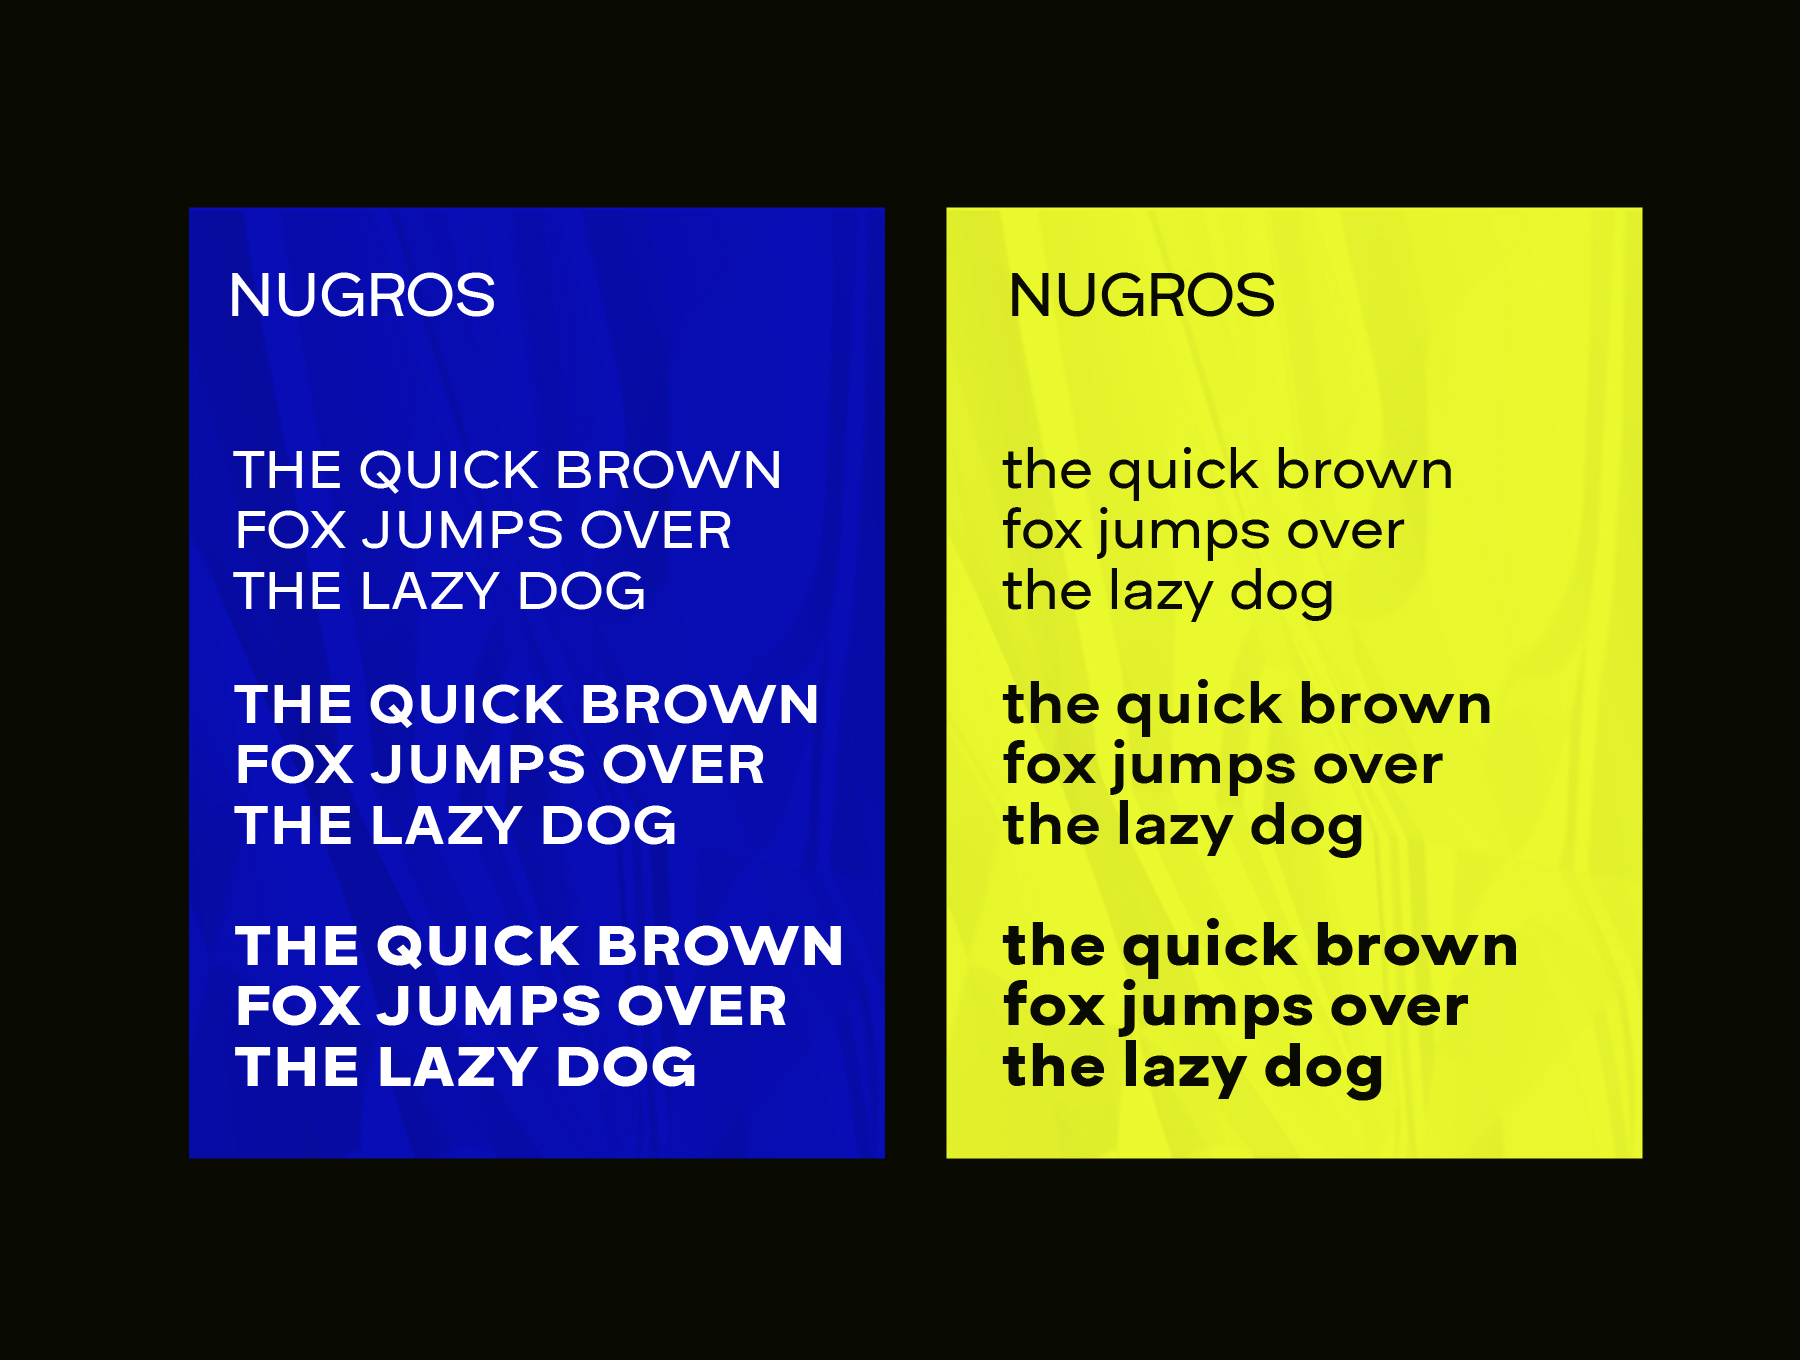 Nugros Extra Bold Font preview